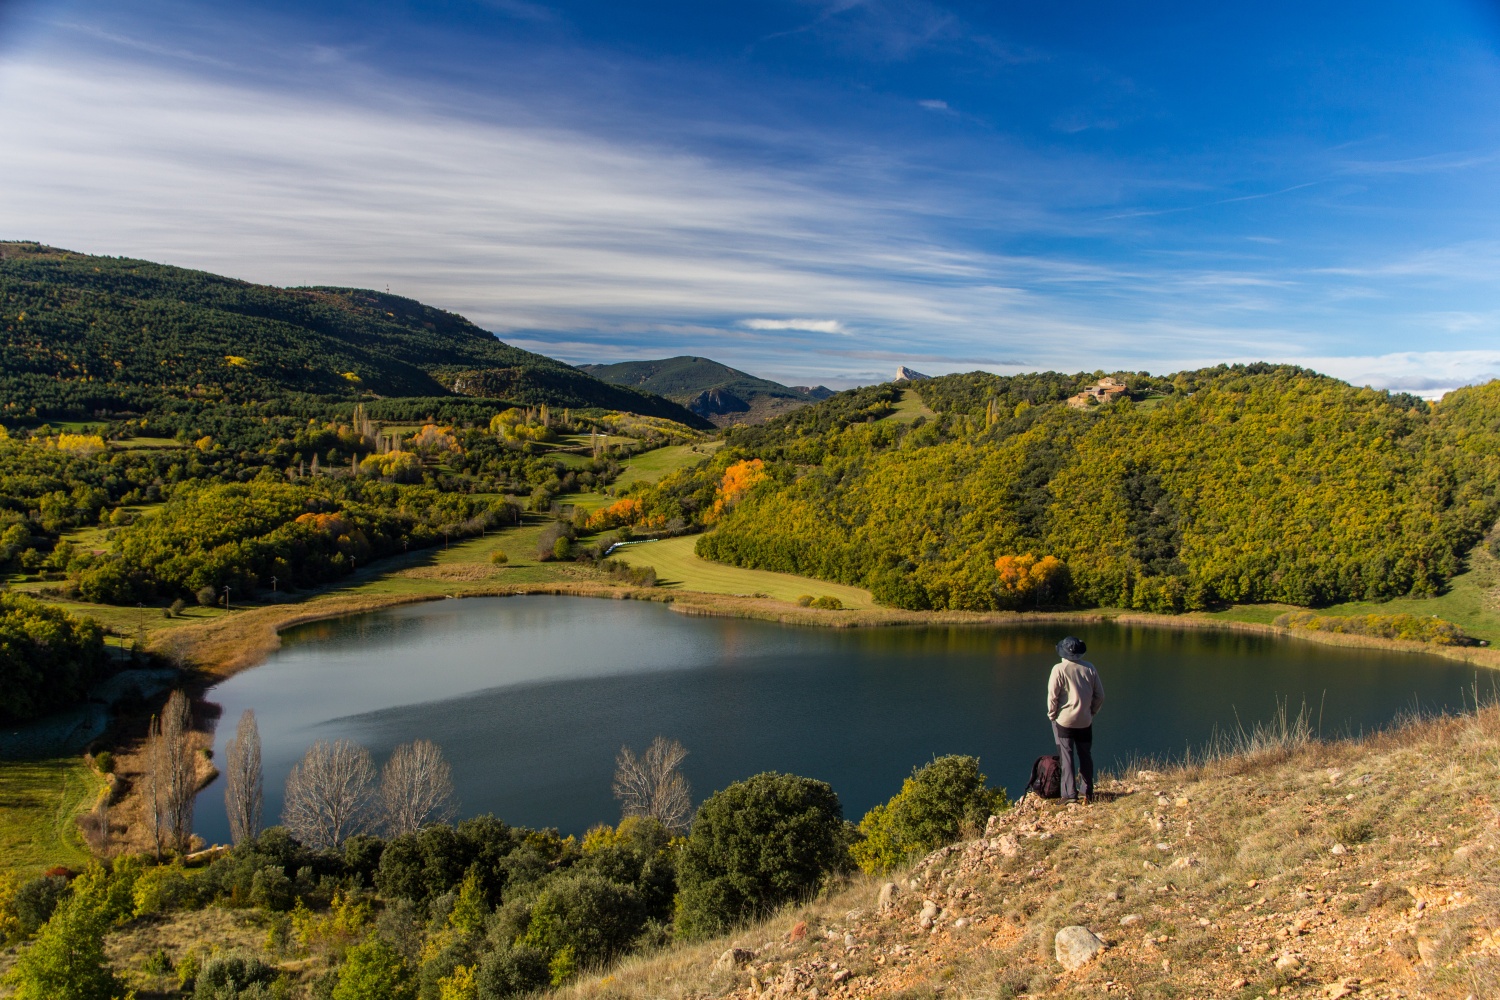 Person stood by side of lake - El cinquè llac copia, Catalonia